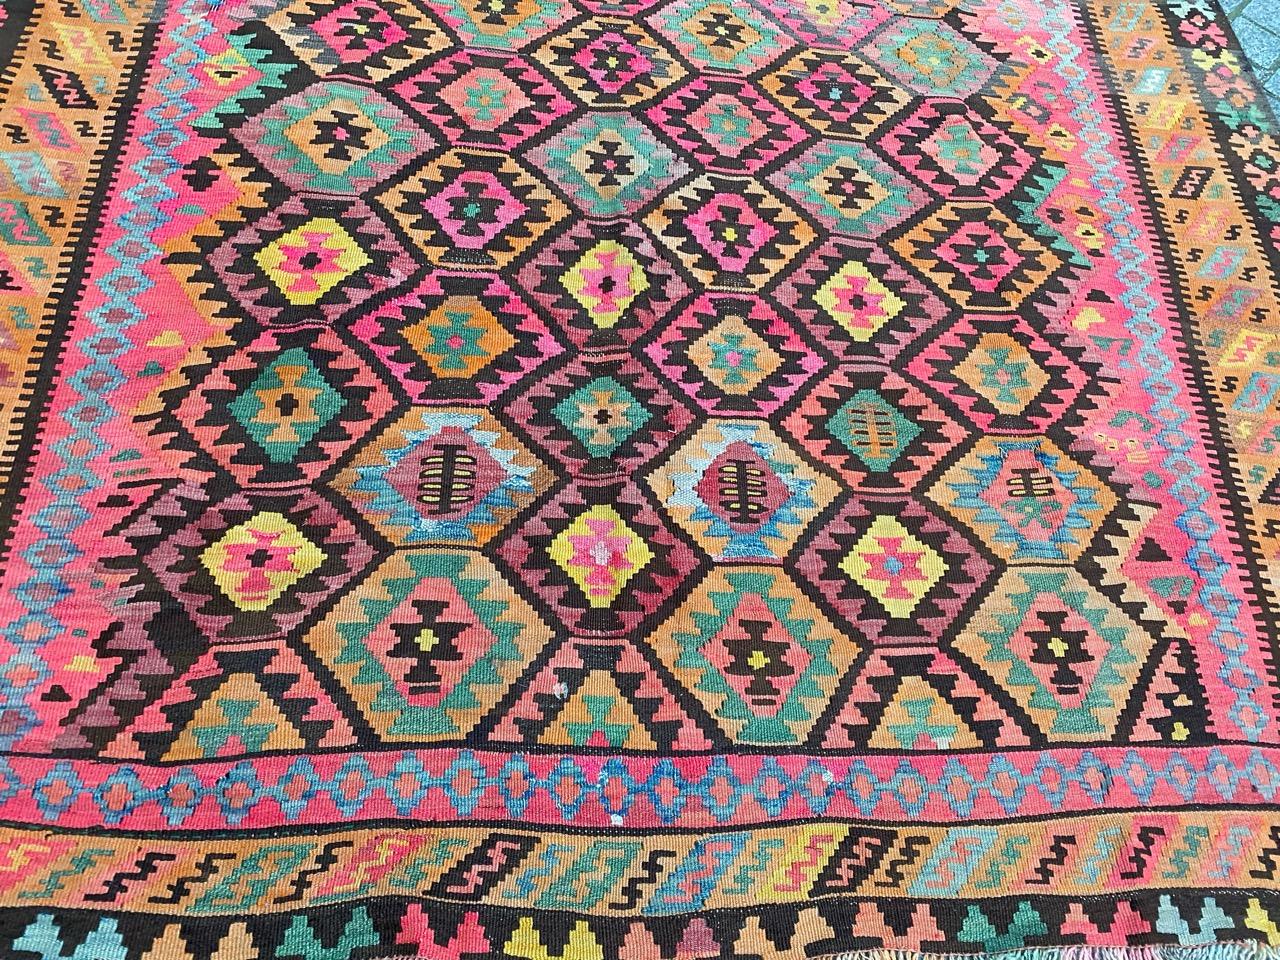 Sehr schöner und farbenfroher anatolischer Kelim mit schönem geometrischem Muster und schönen Farben, komplett handgewebt mit Wolle auf Baumwollbasis.

✨✨✨
